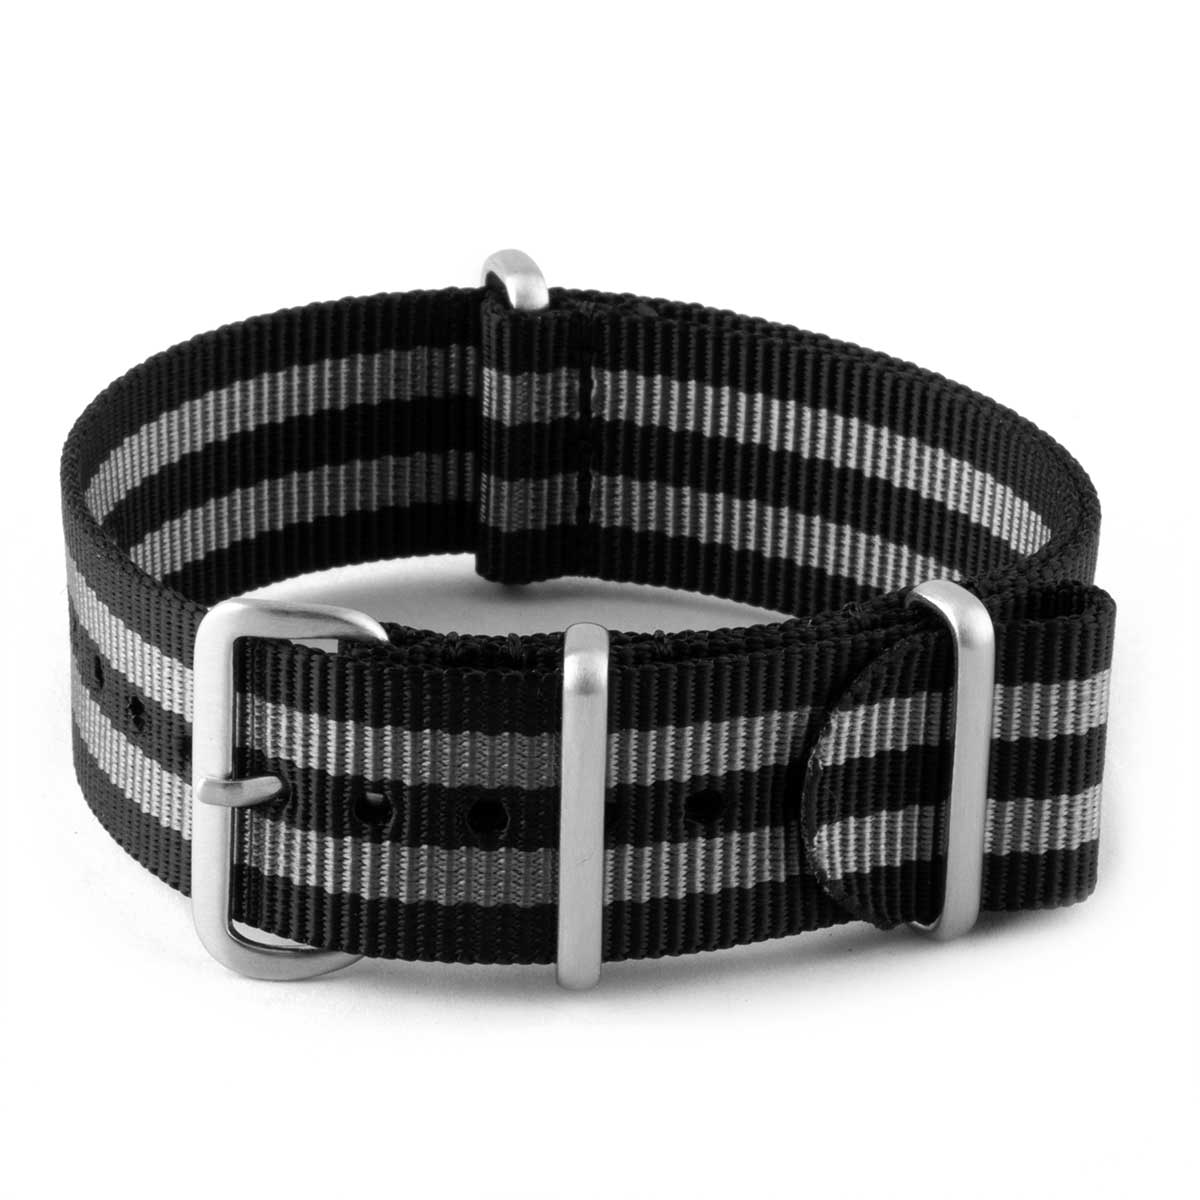 Bracelet-montre Nato - Nylon / Tissus - James Bond "Original" - watch band leather strap - ABP Concept -